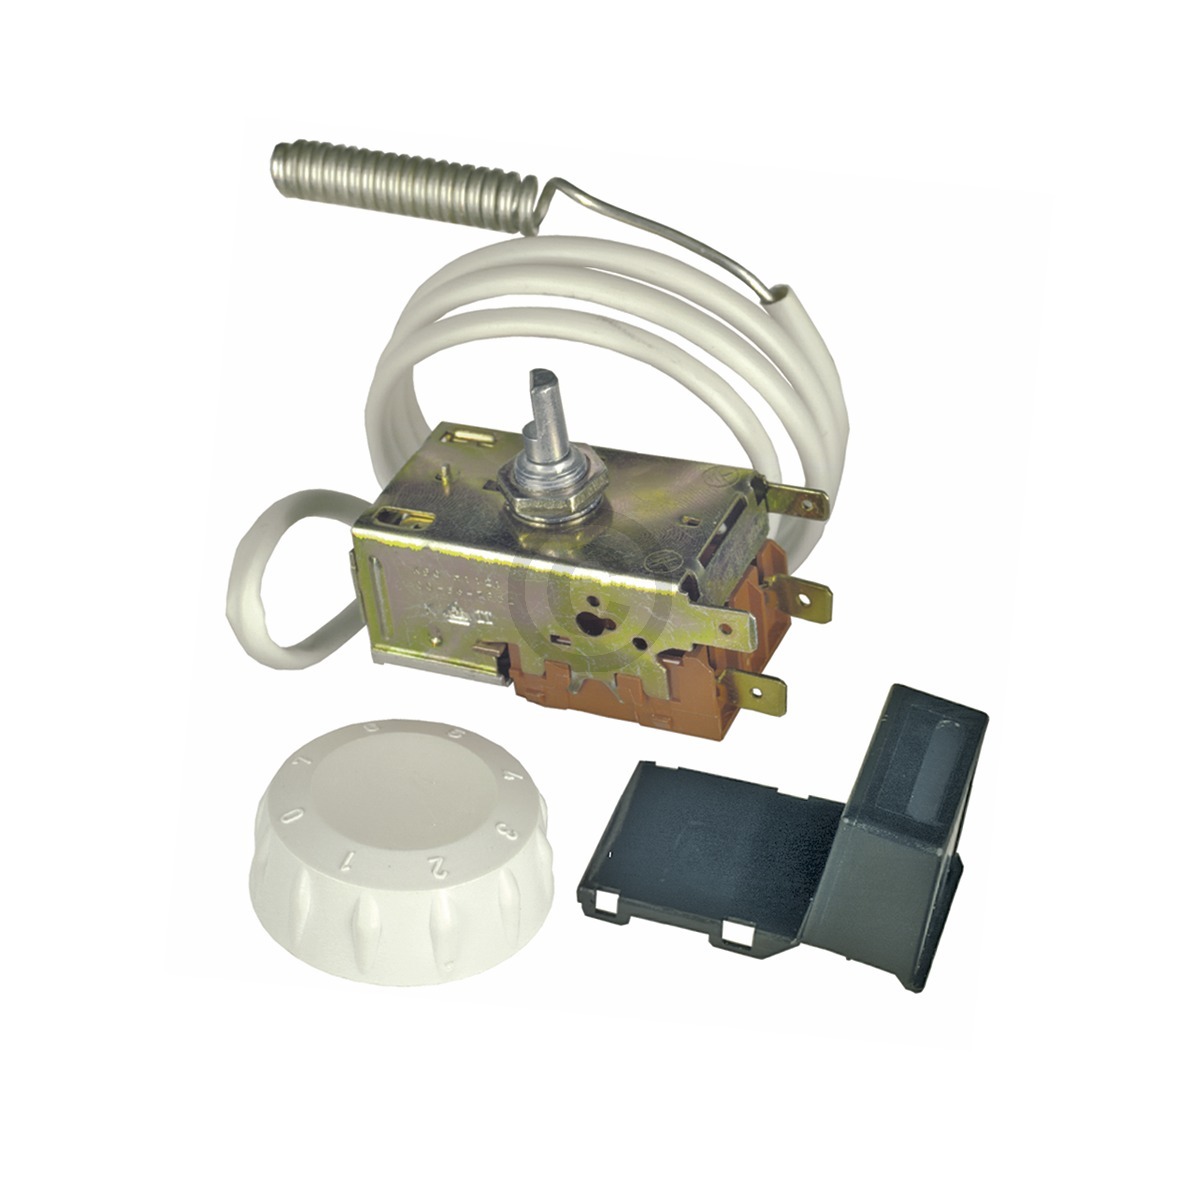 Thermostat K50-H1121/011 Ranco 850mm Kapillarrohr zur Nasskühlung